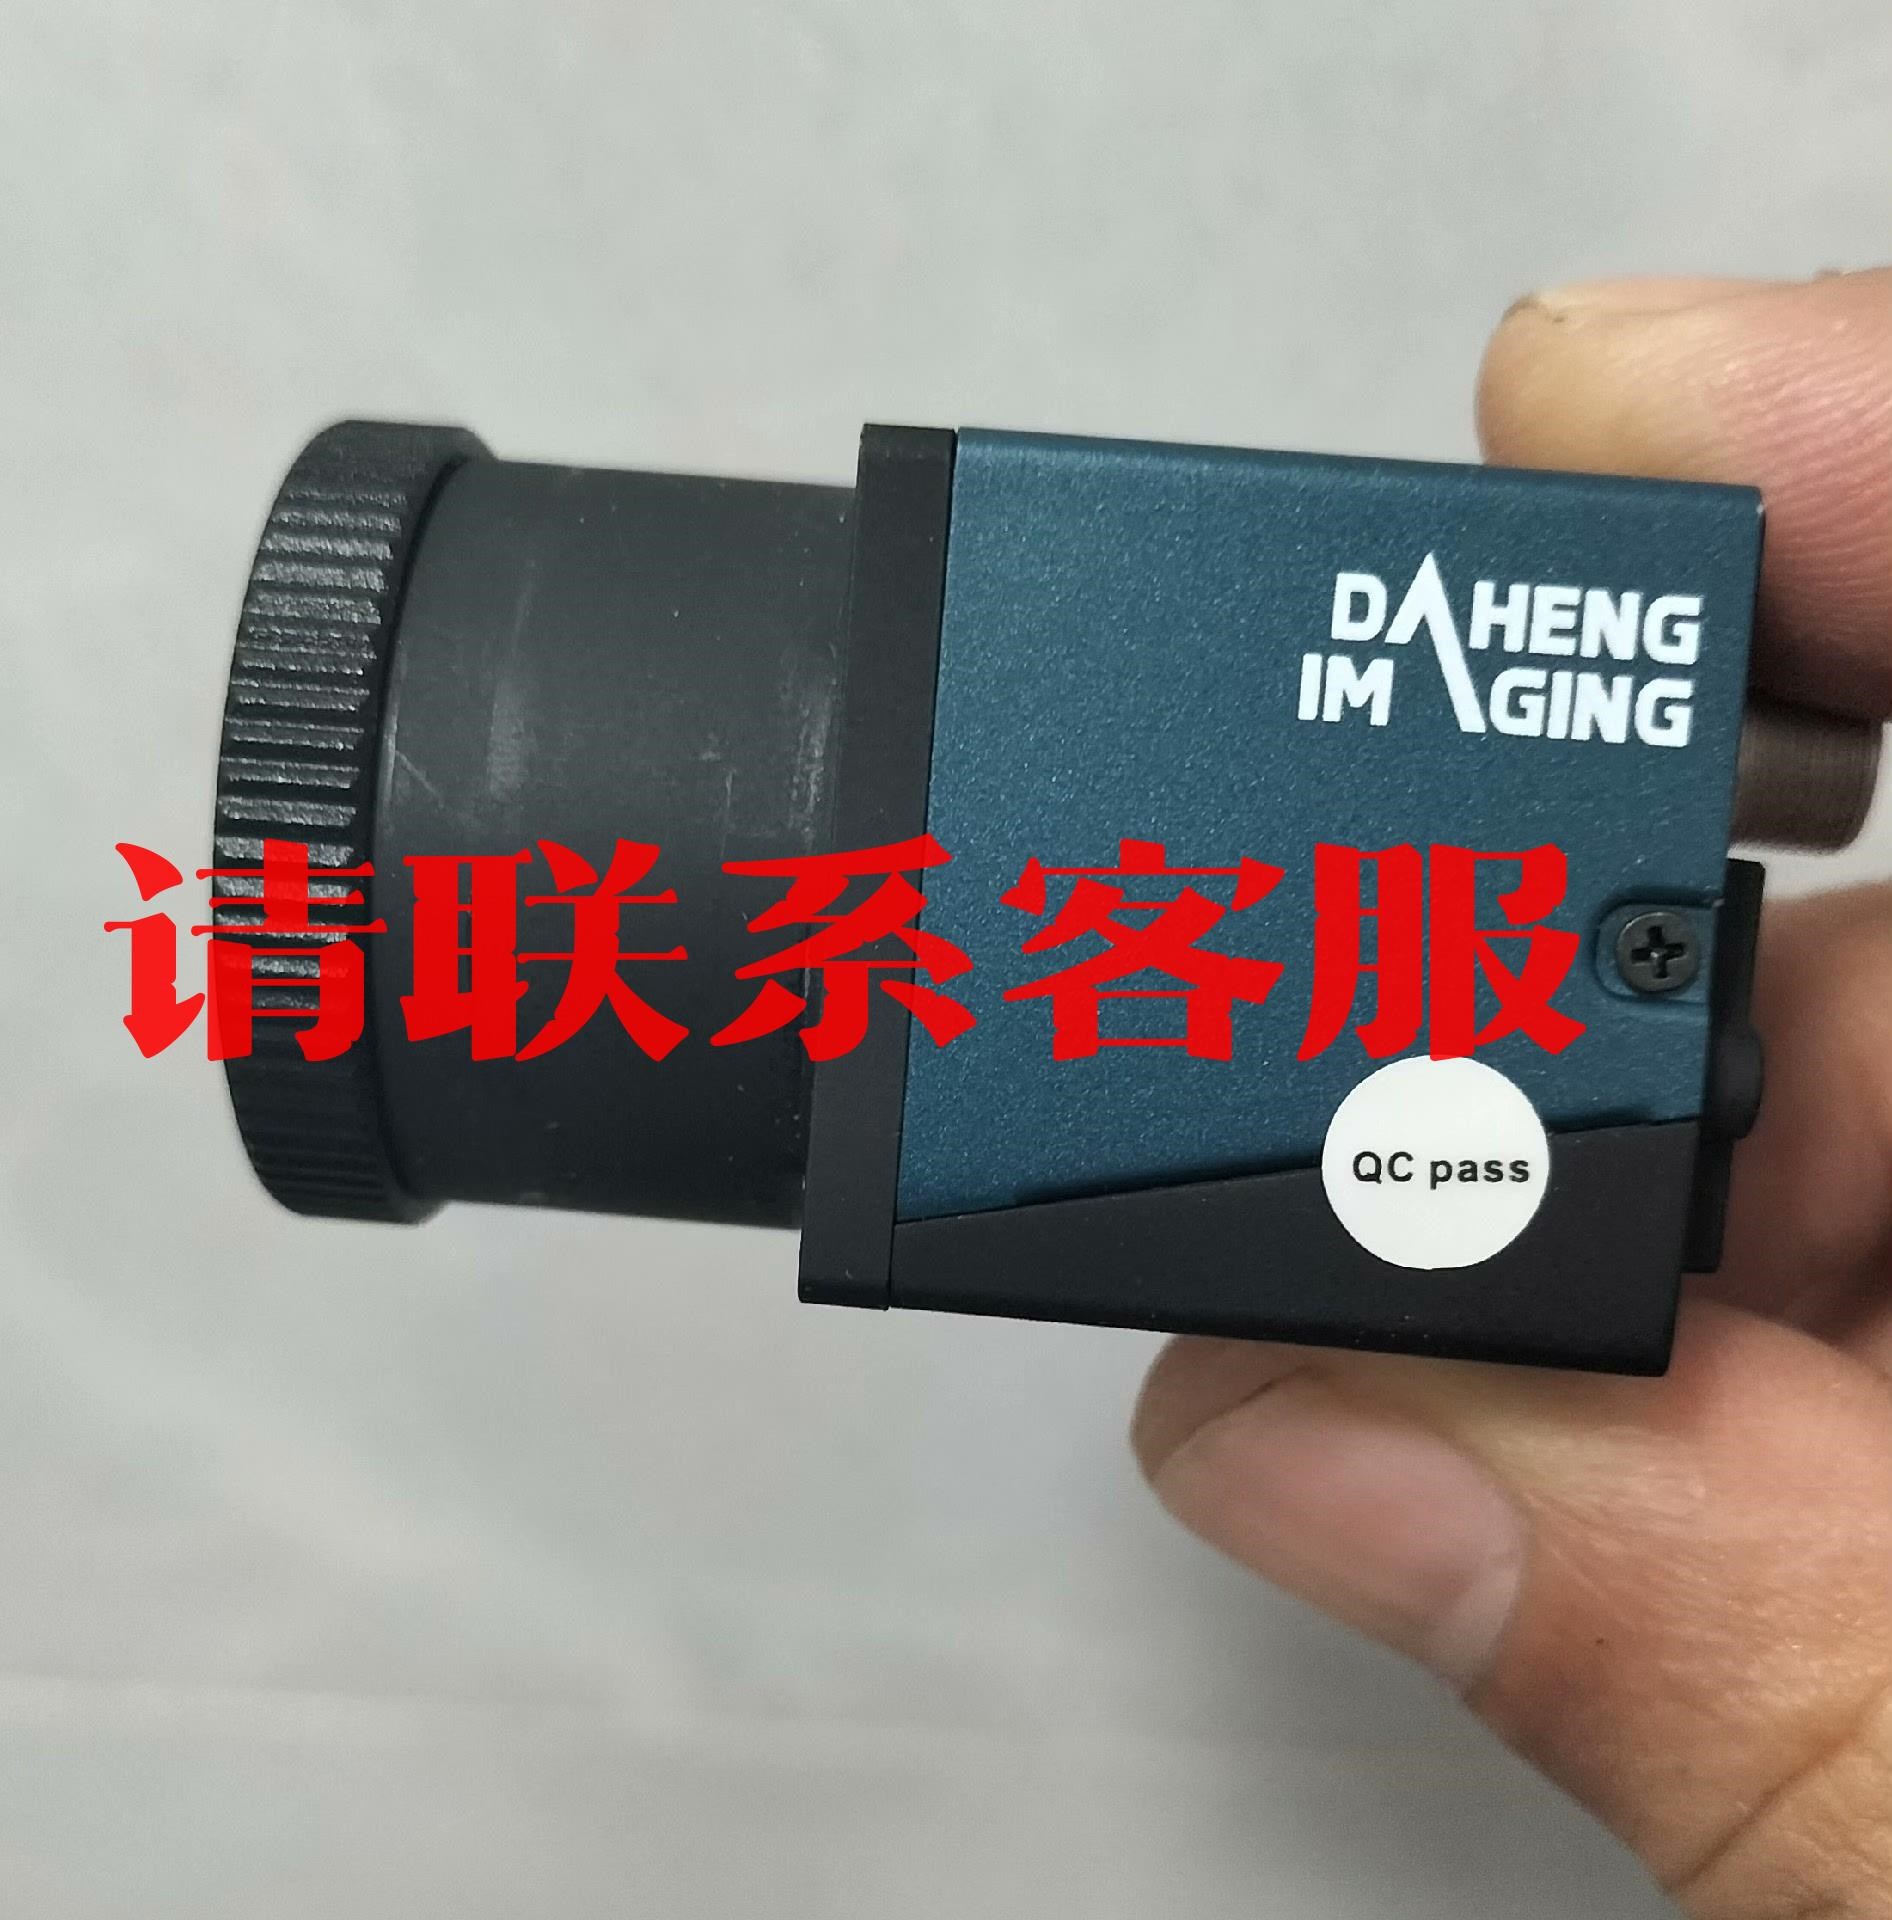 大恒Mer132－43GM网口相机。成色如新，配原装镜头议价出售